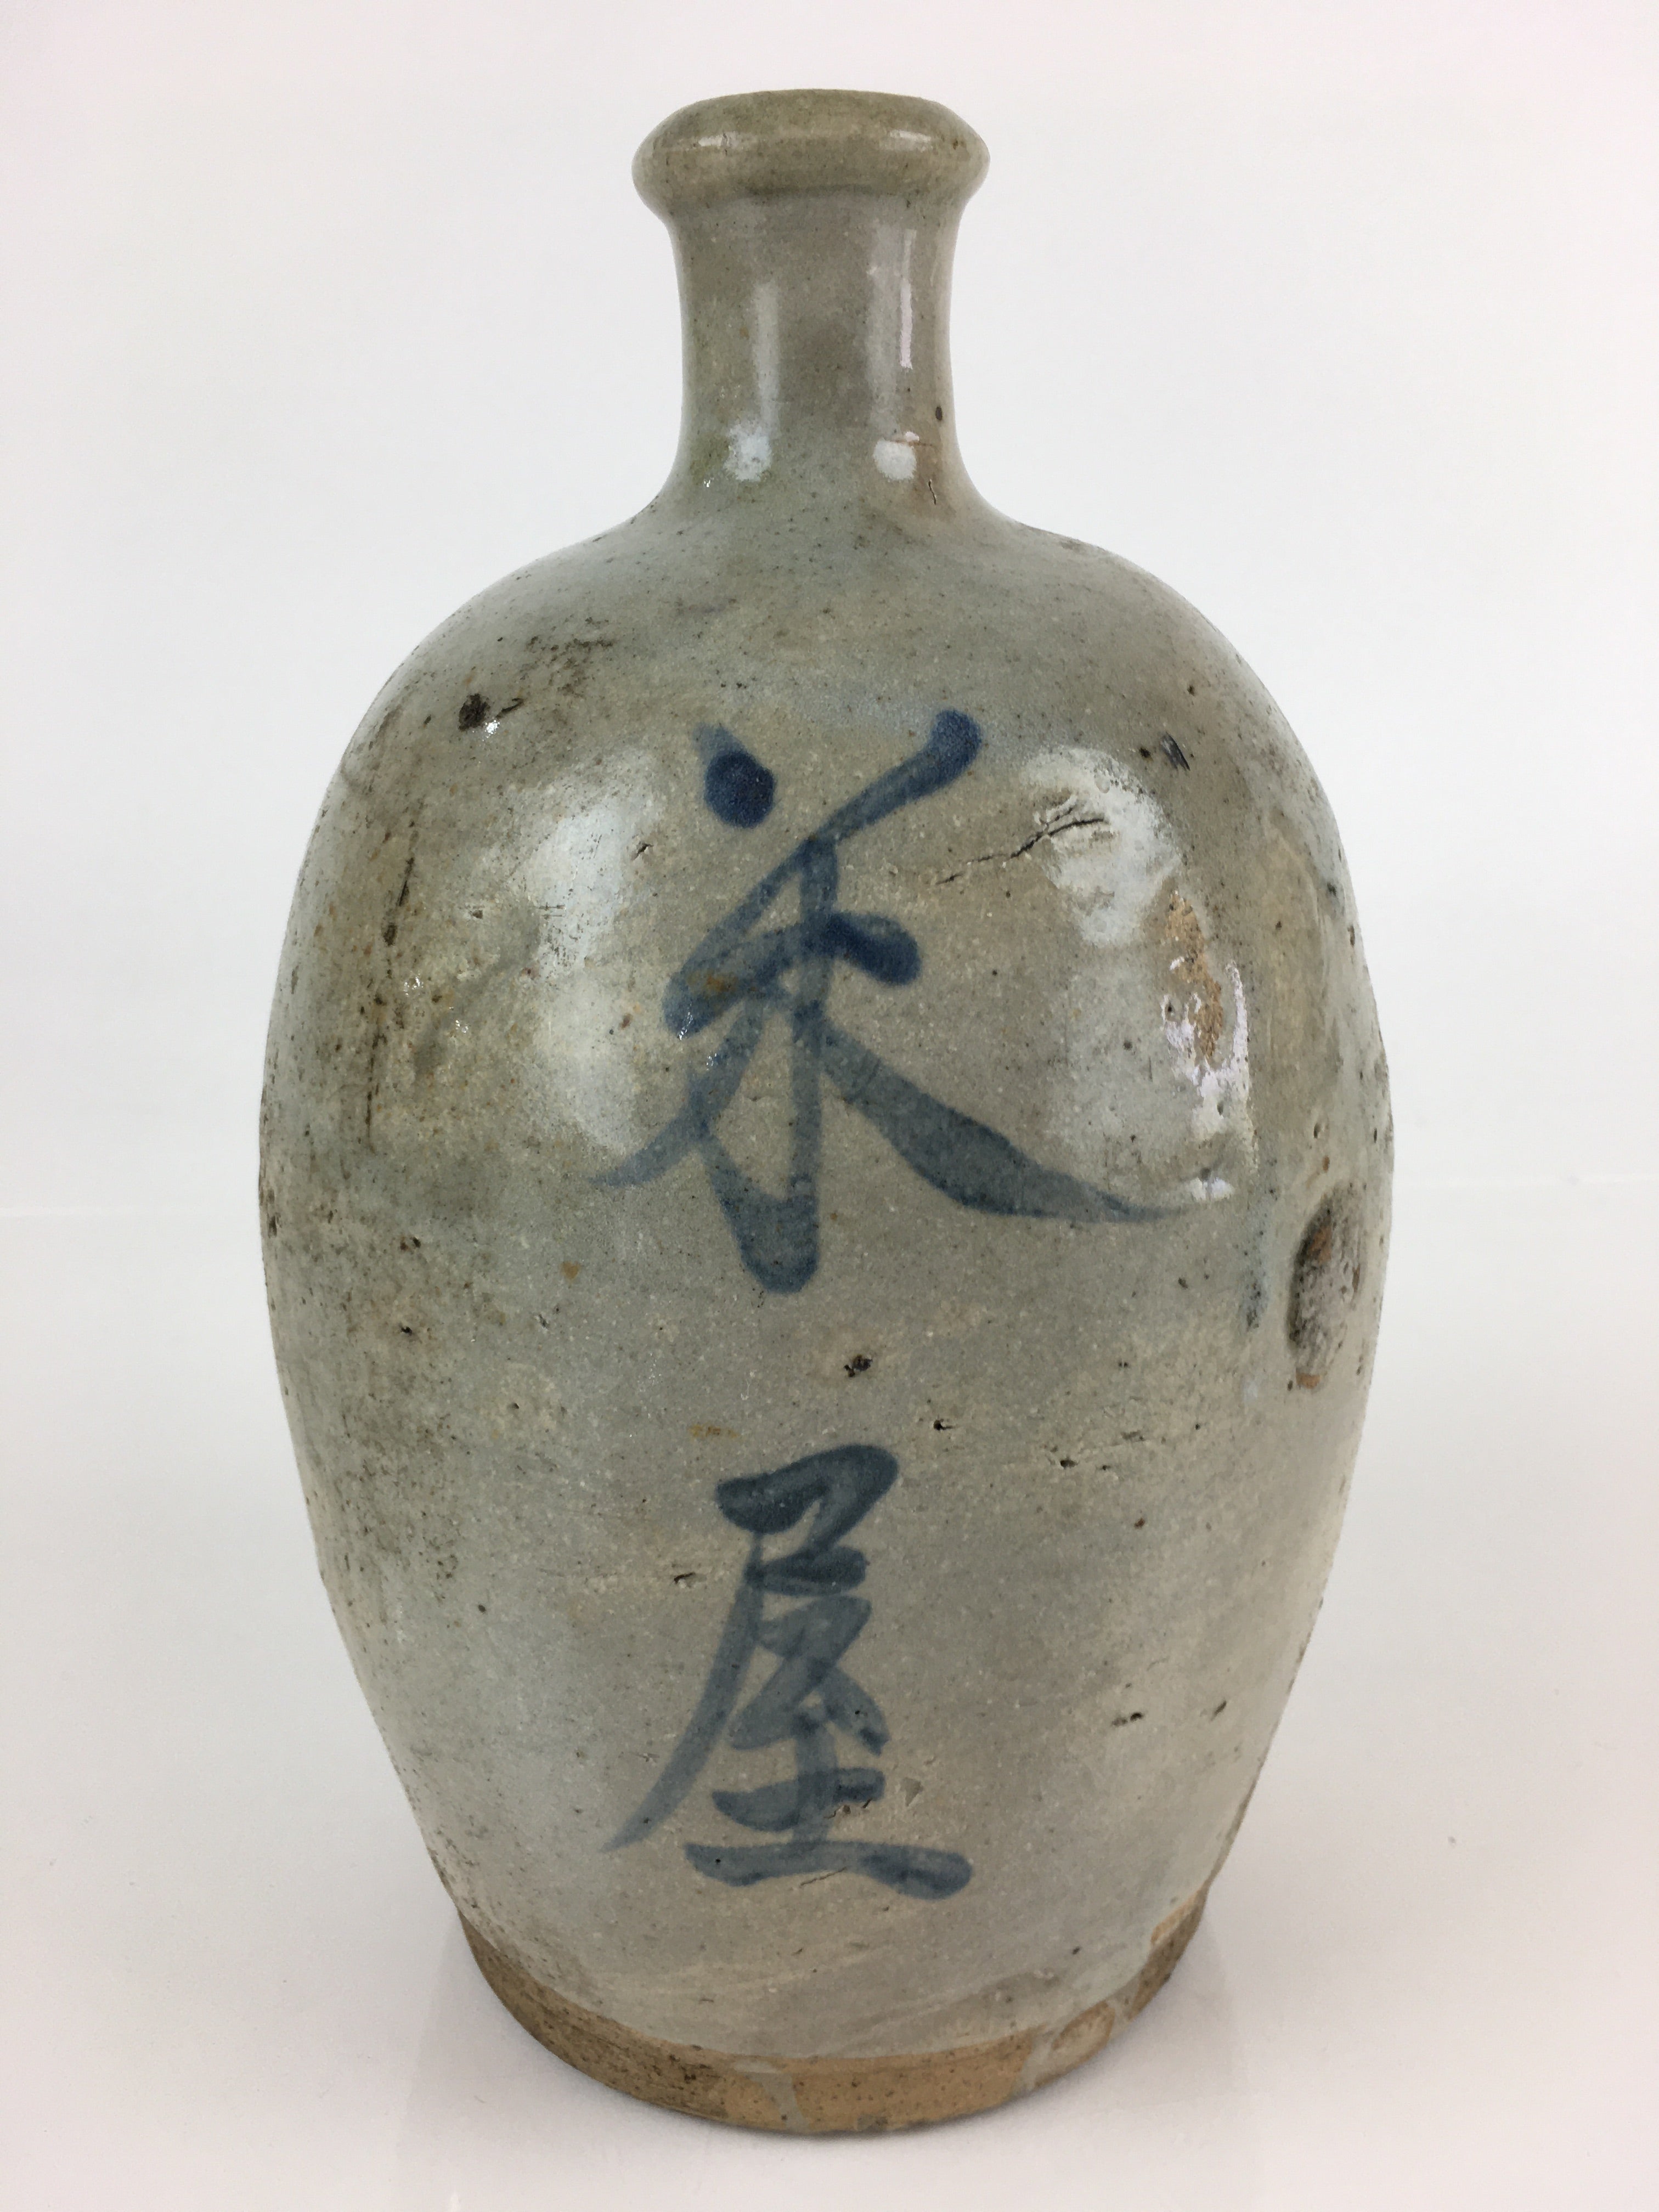 Japanese Ceramic Sake Bottle Tokkuri Vtg Pottery Gray Hand-Written Kanji TS421